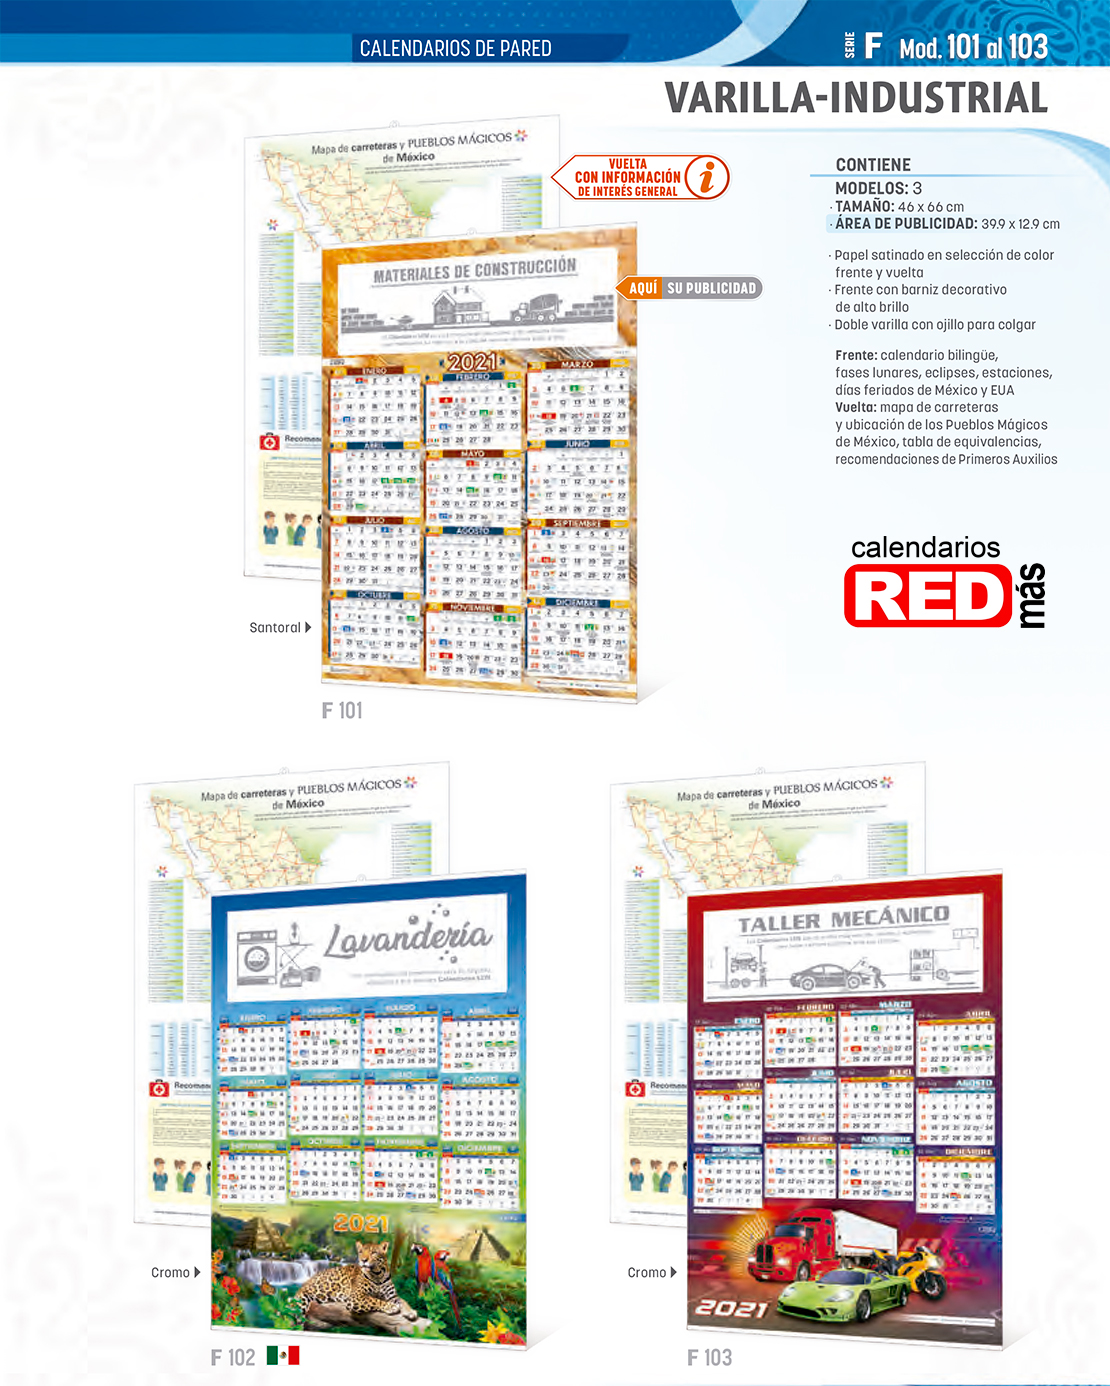 45-Catalogo-Calendarios-LEN-2021-Serie-F101-103-calendarios-red-2021.jpg